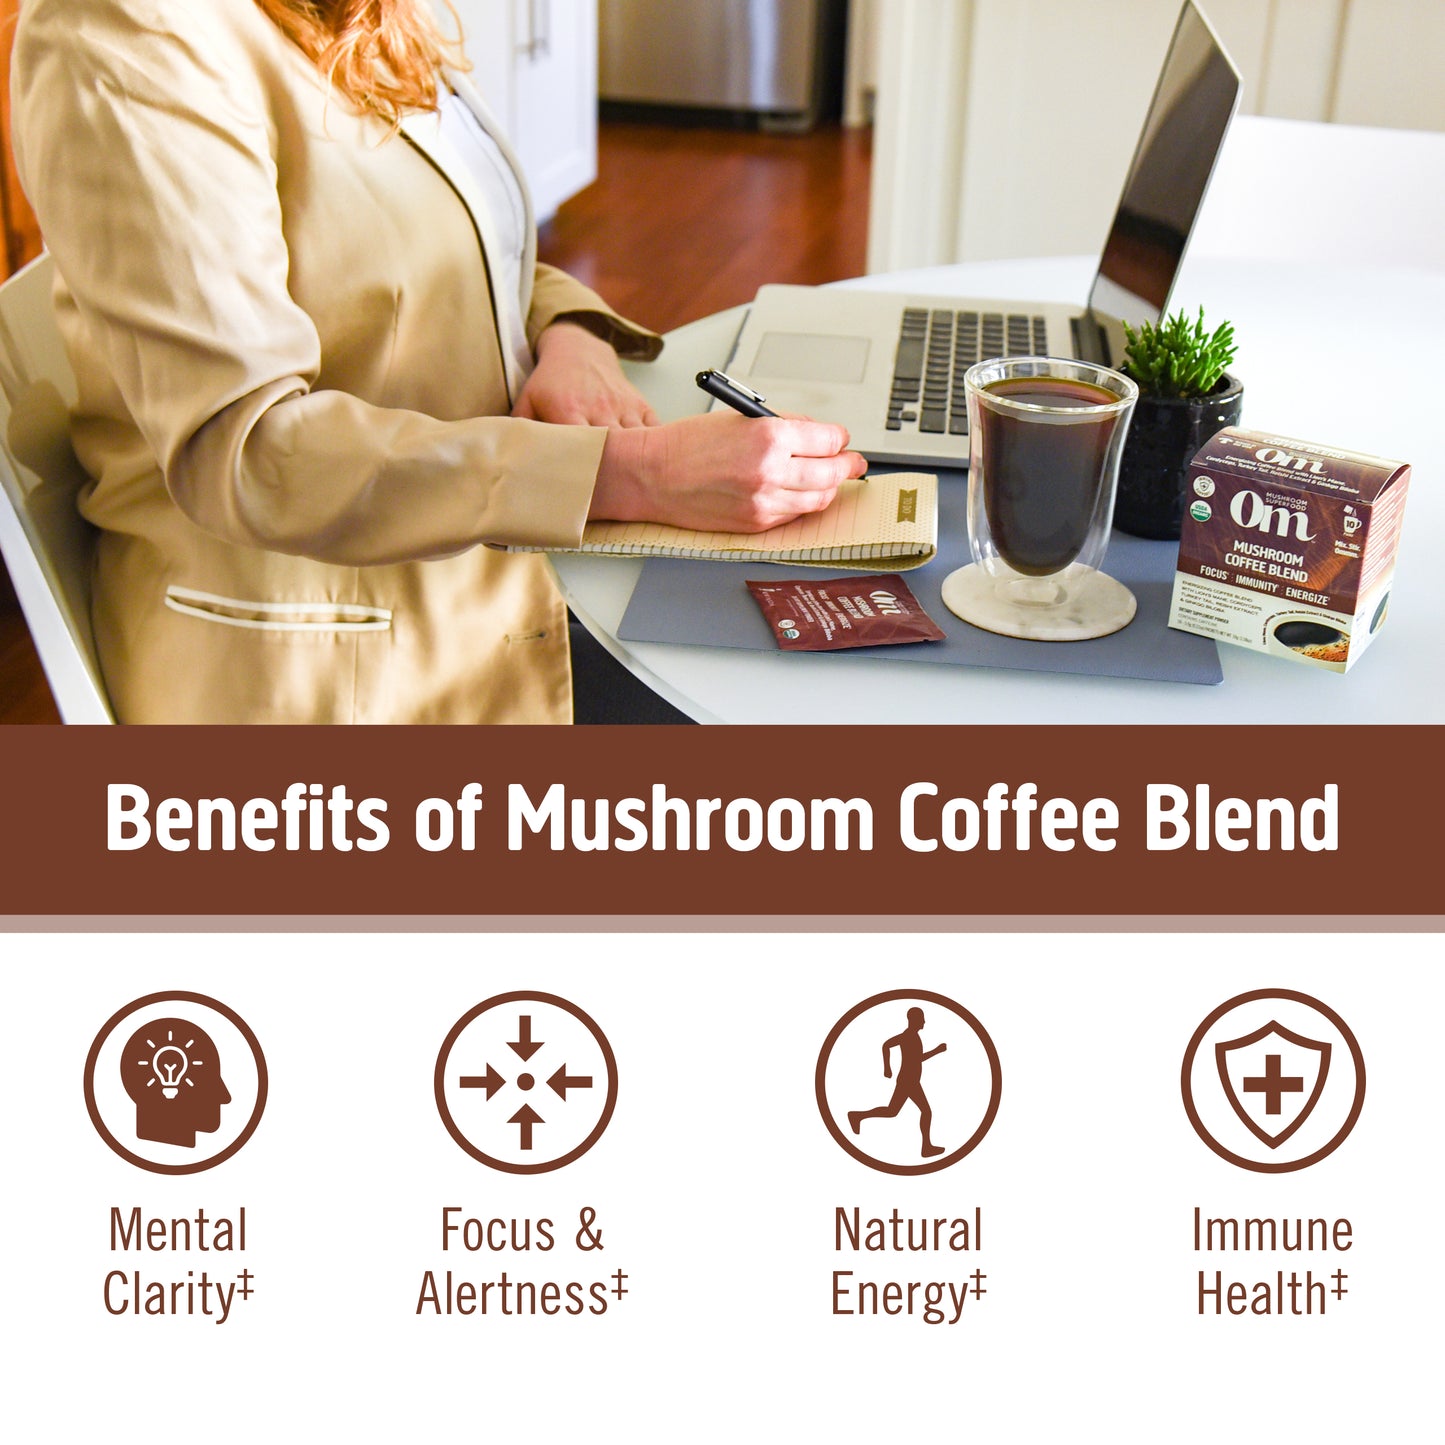 Mushroom Coffee Blend